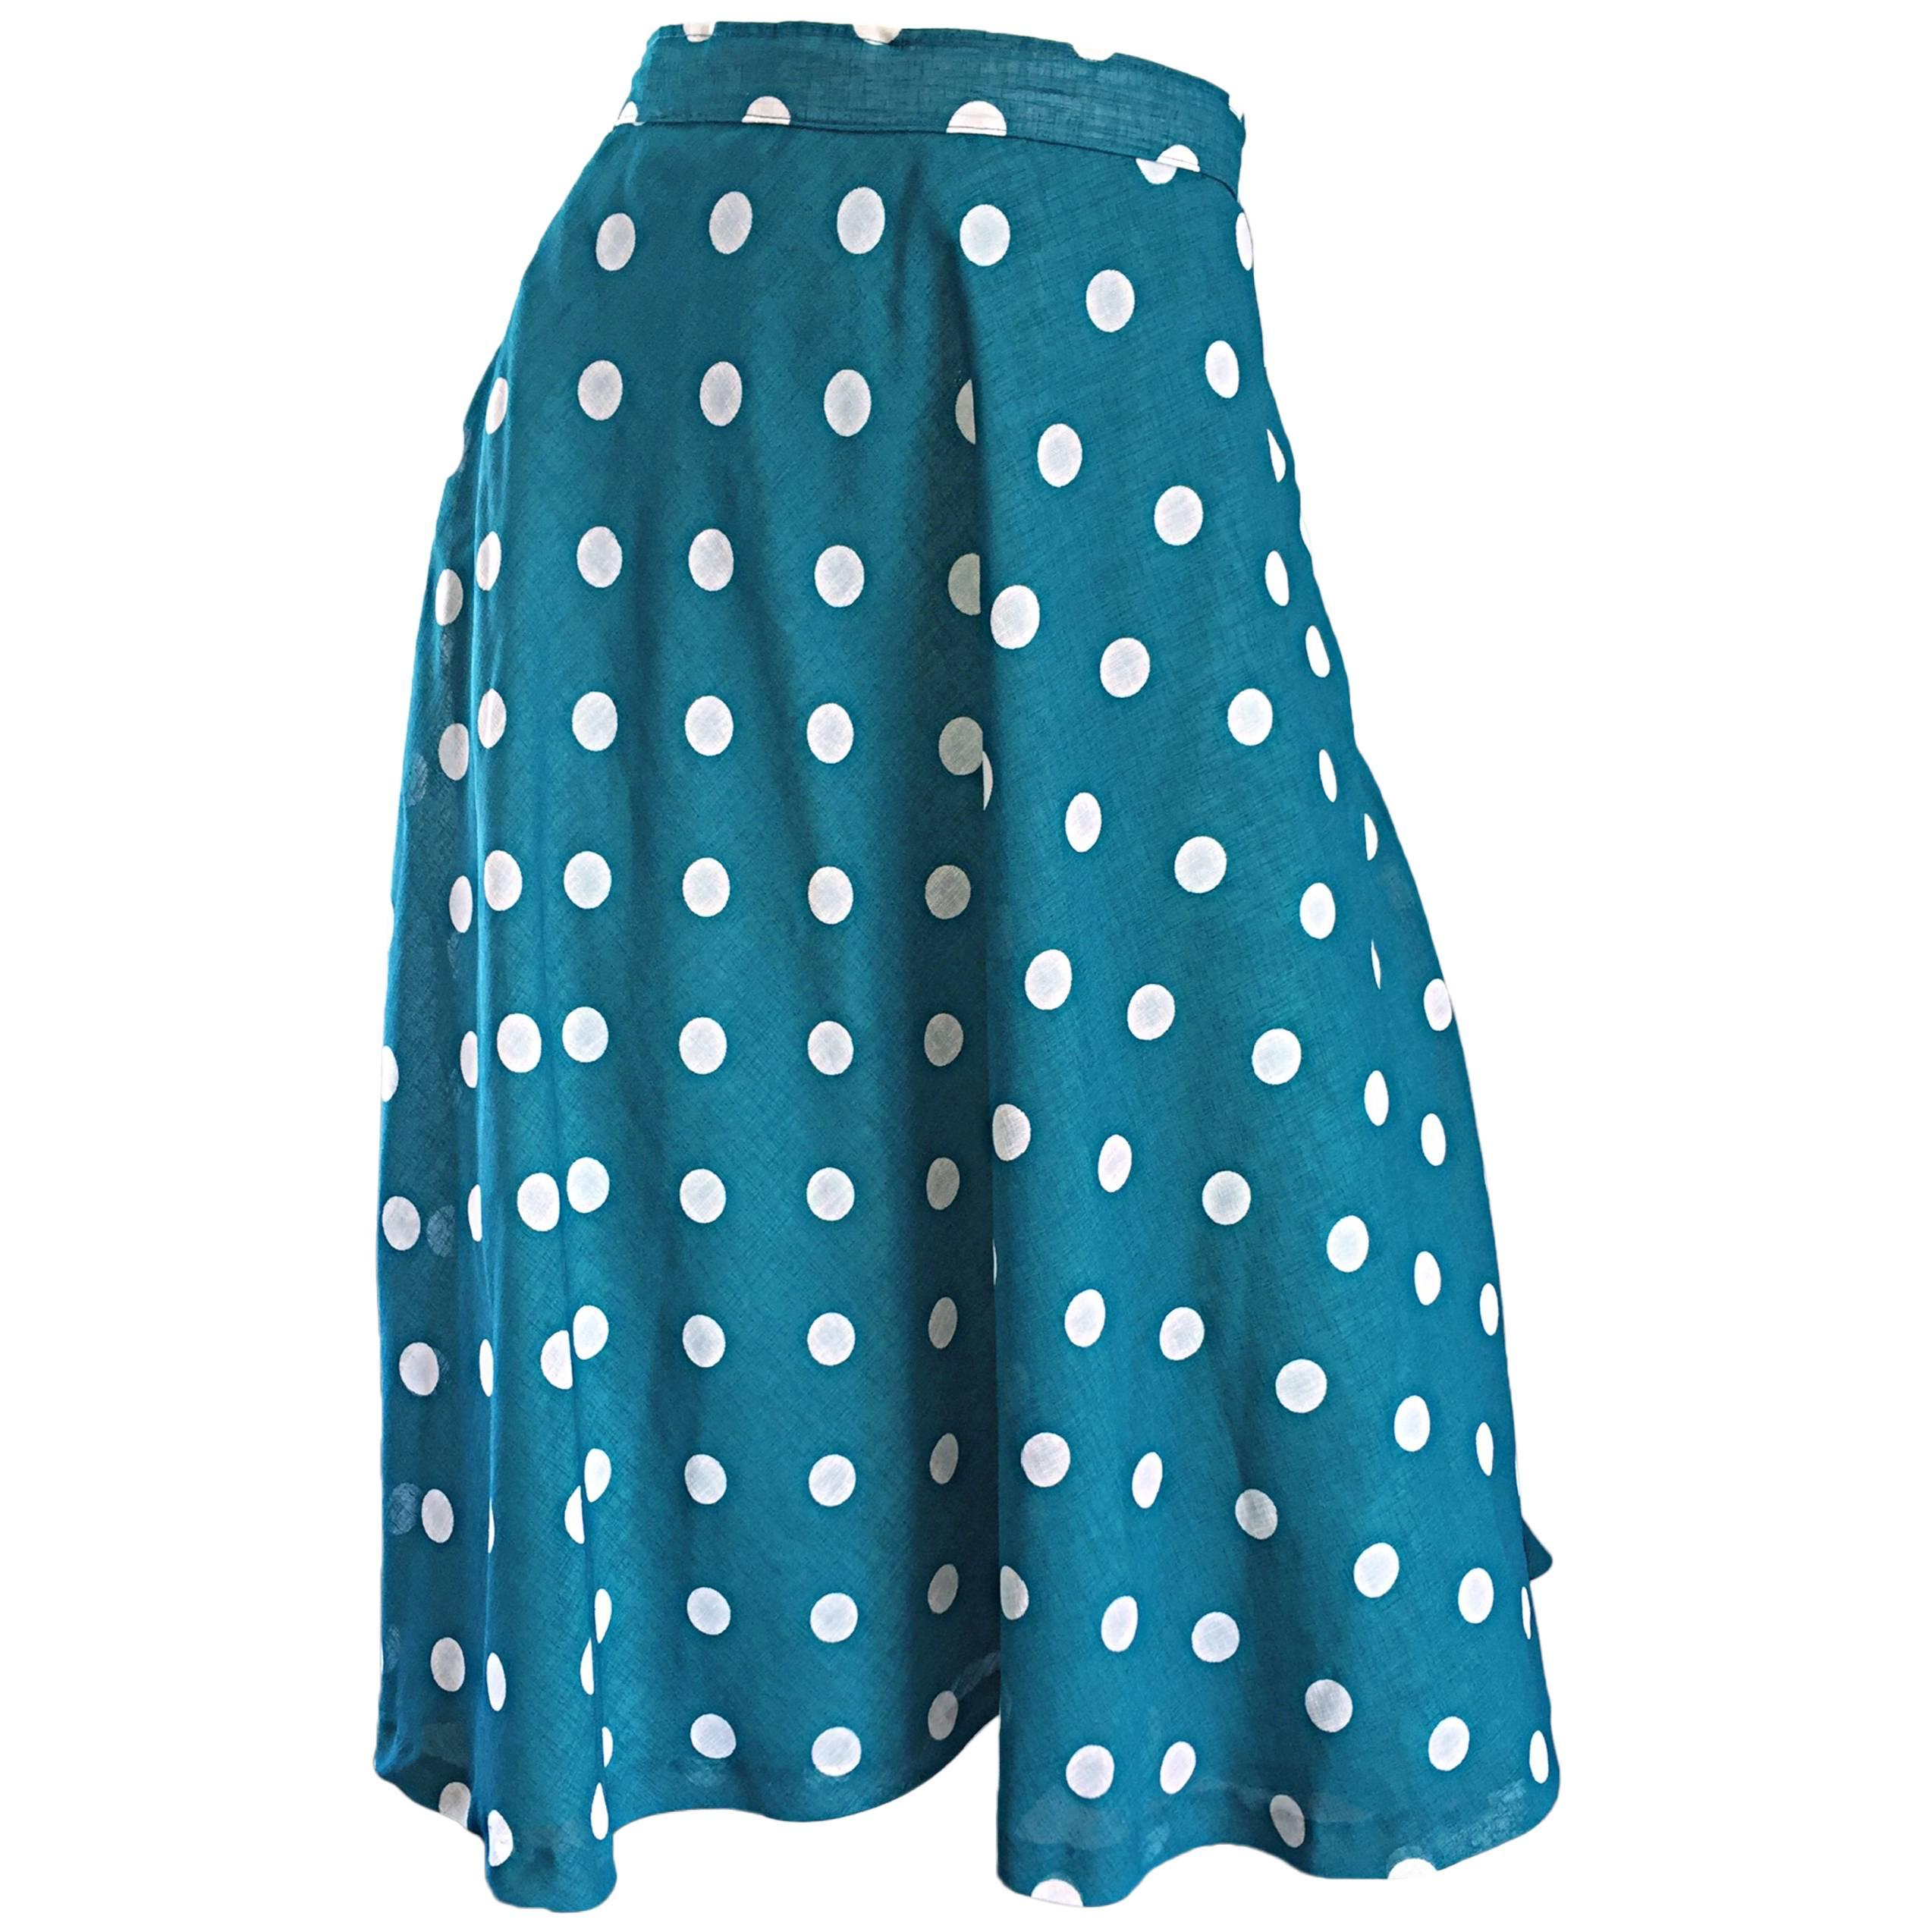 1950s Turquoise Blue + White Polka Dot Full Vintage 50s Cotton Voile Skirt  For Sale